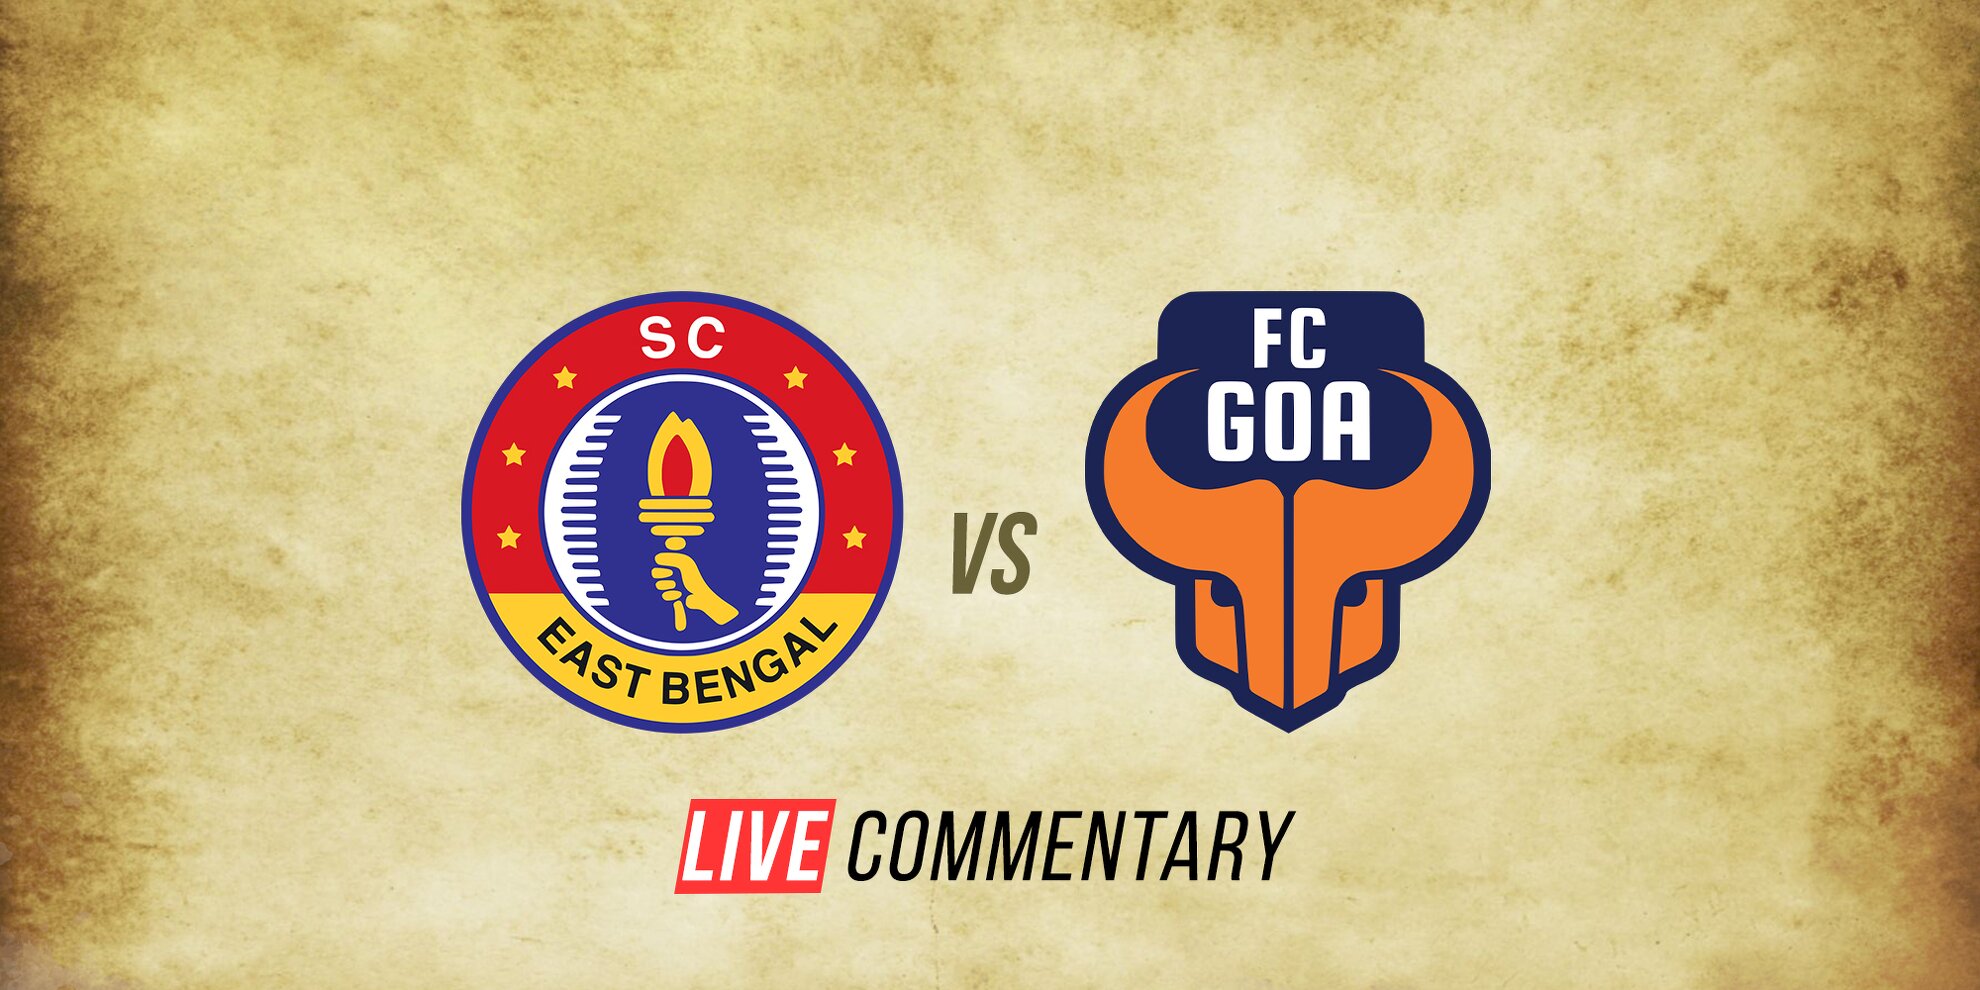 SC East Bengal FC Goa